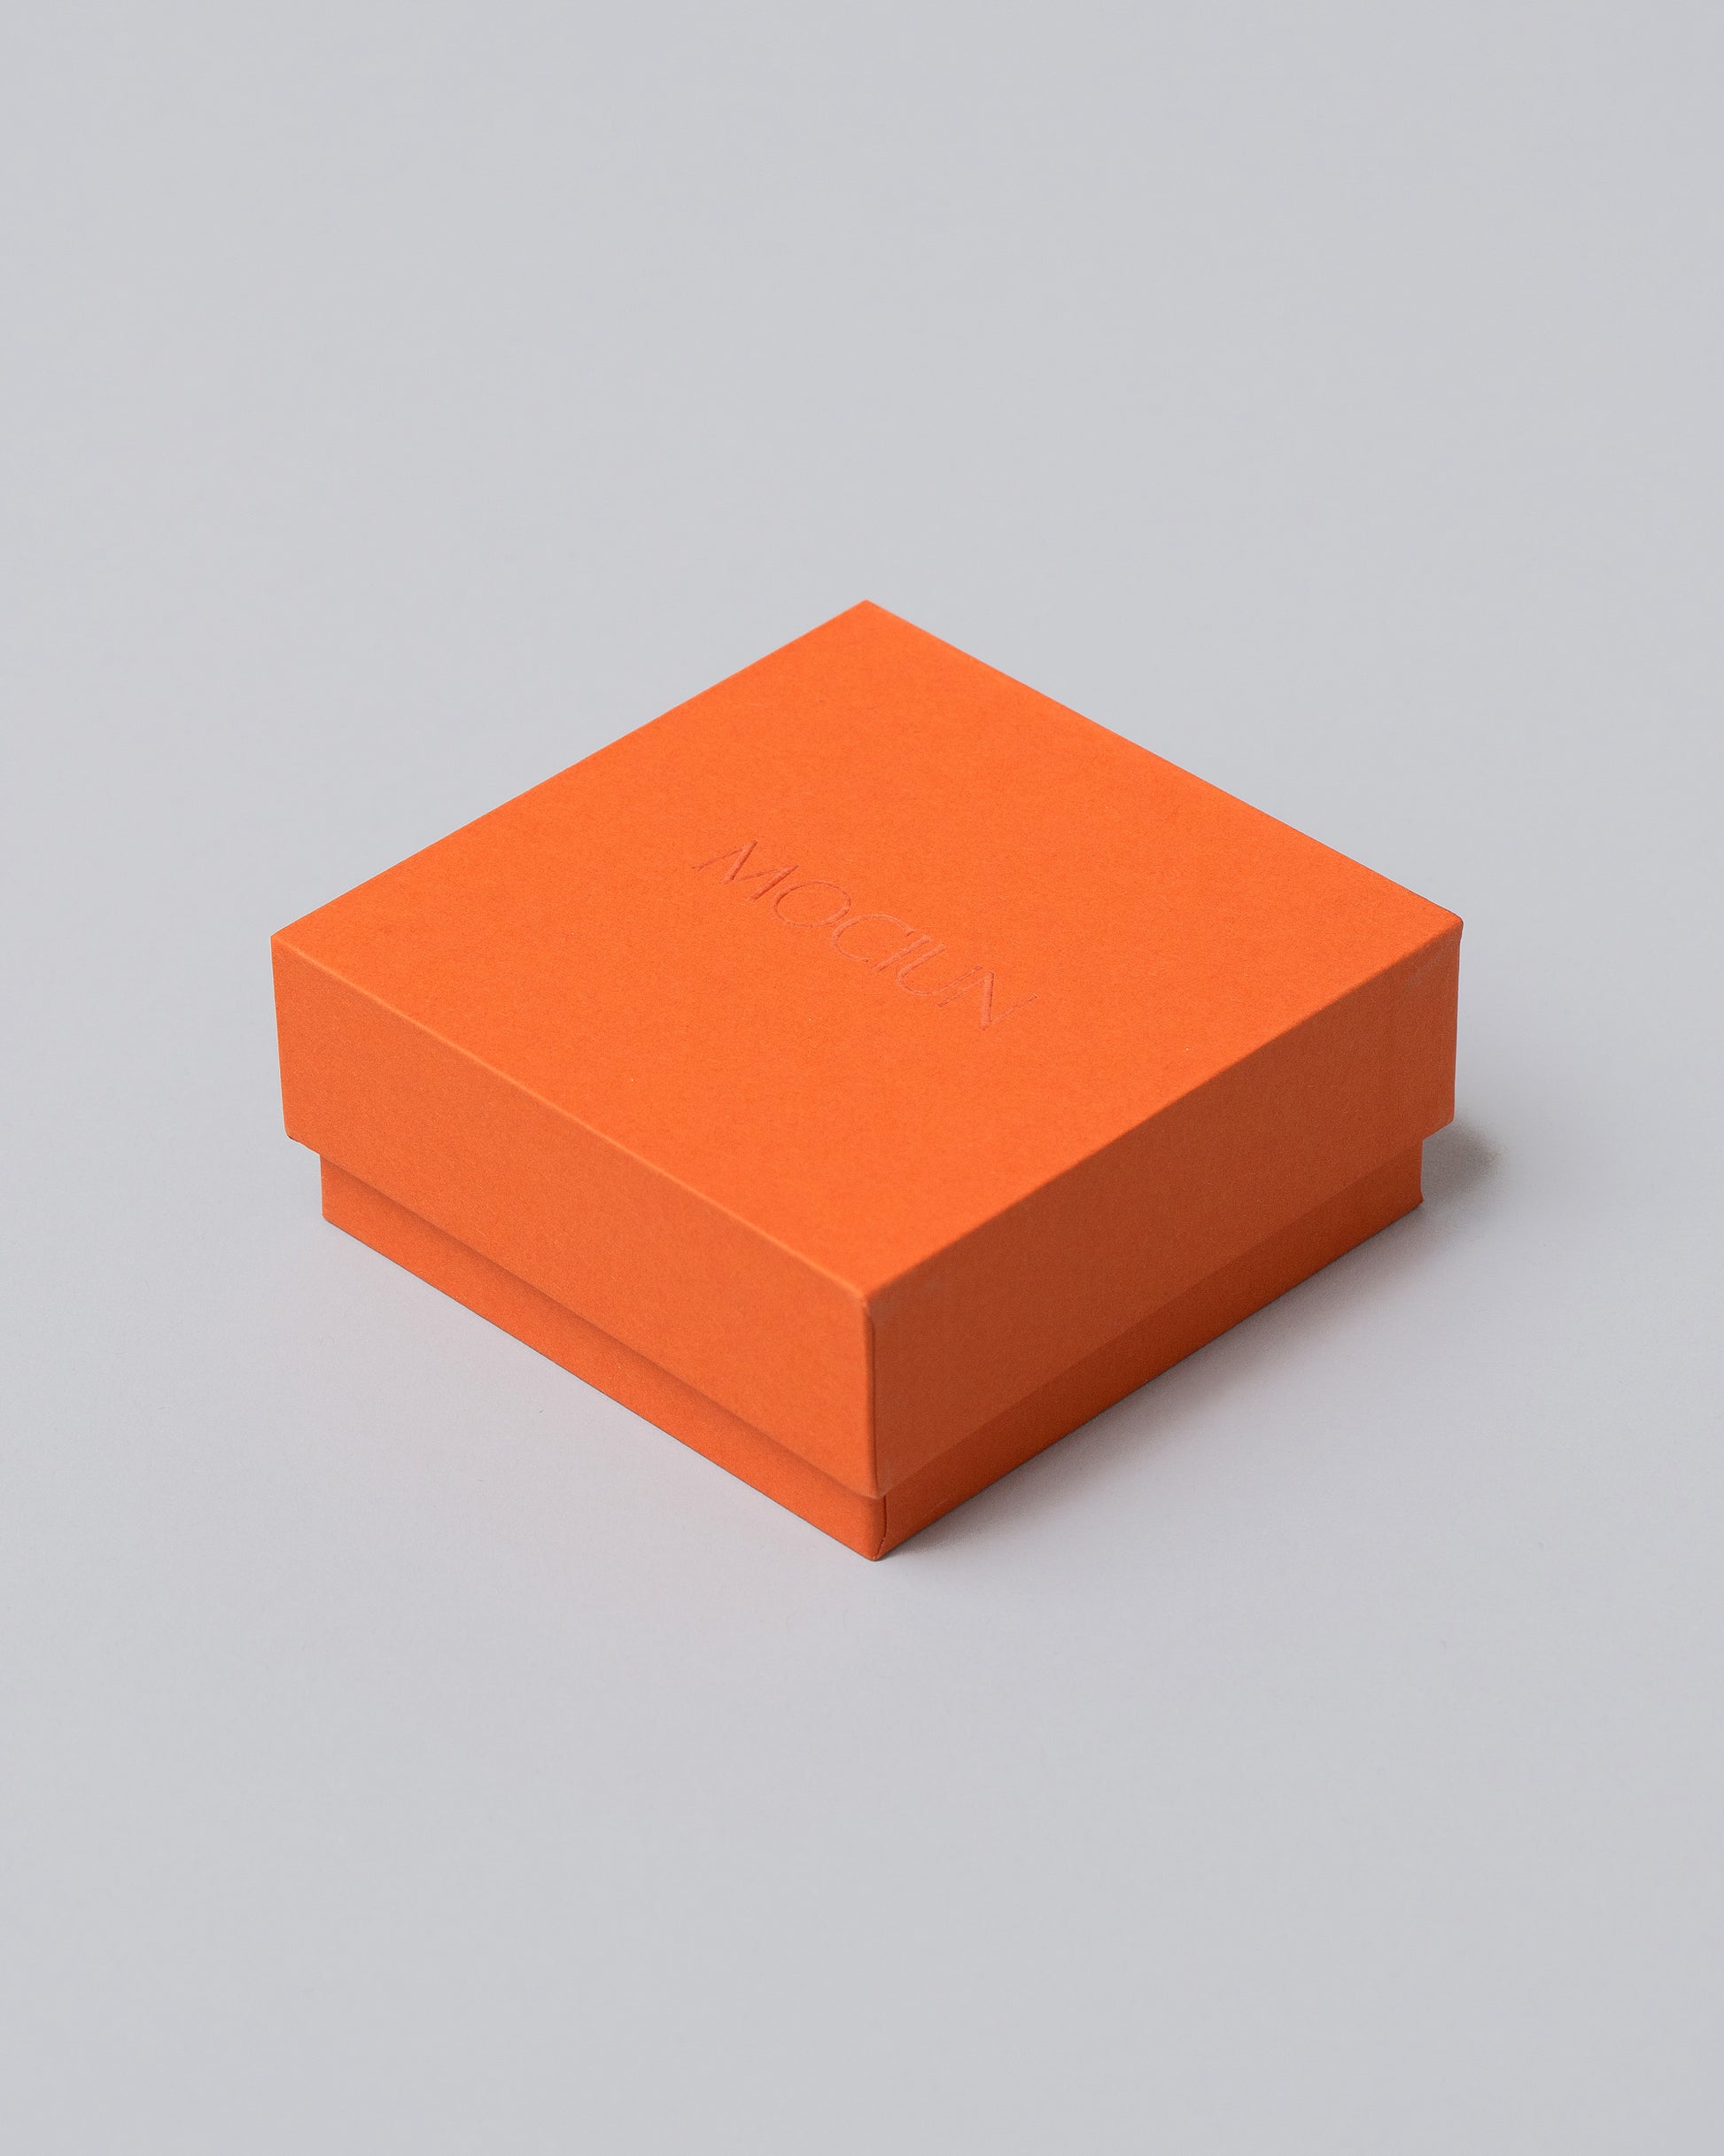 Orange Standard Box on light color background.